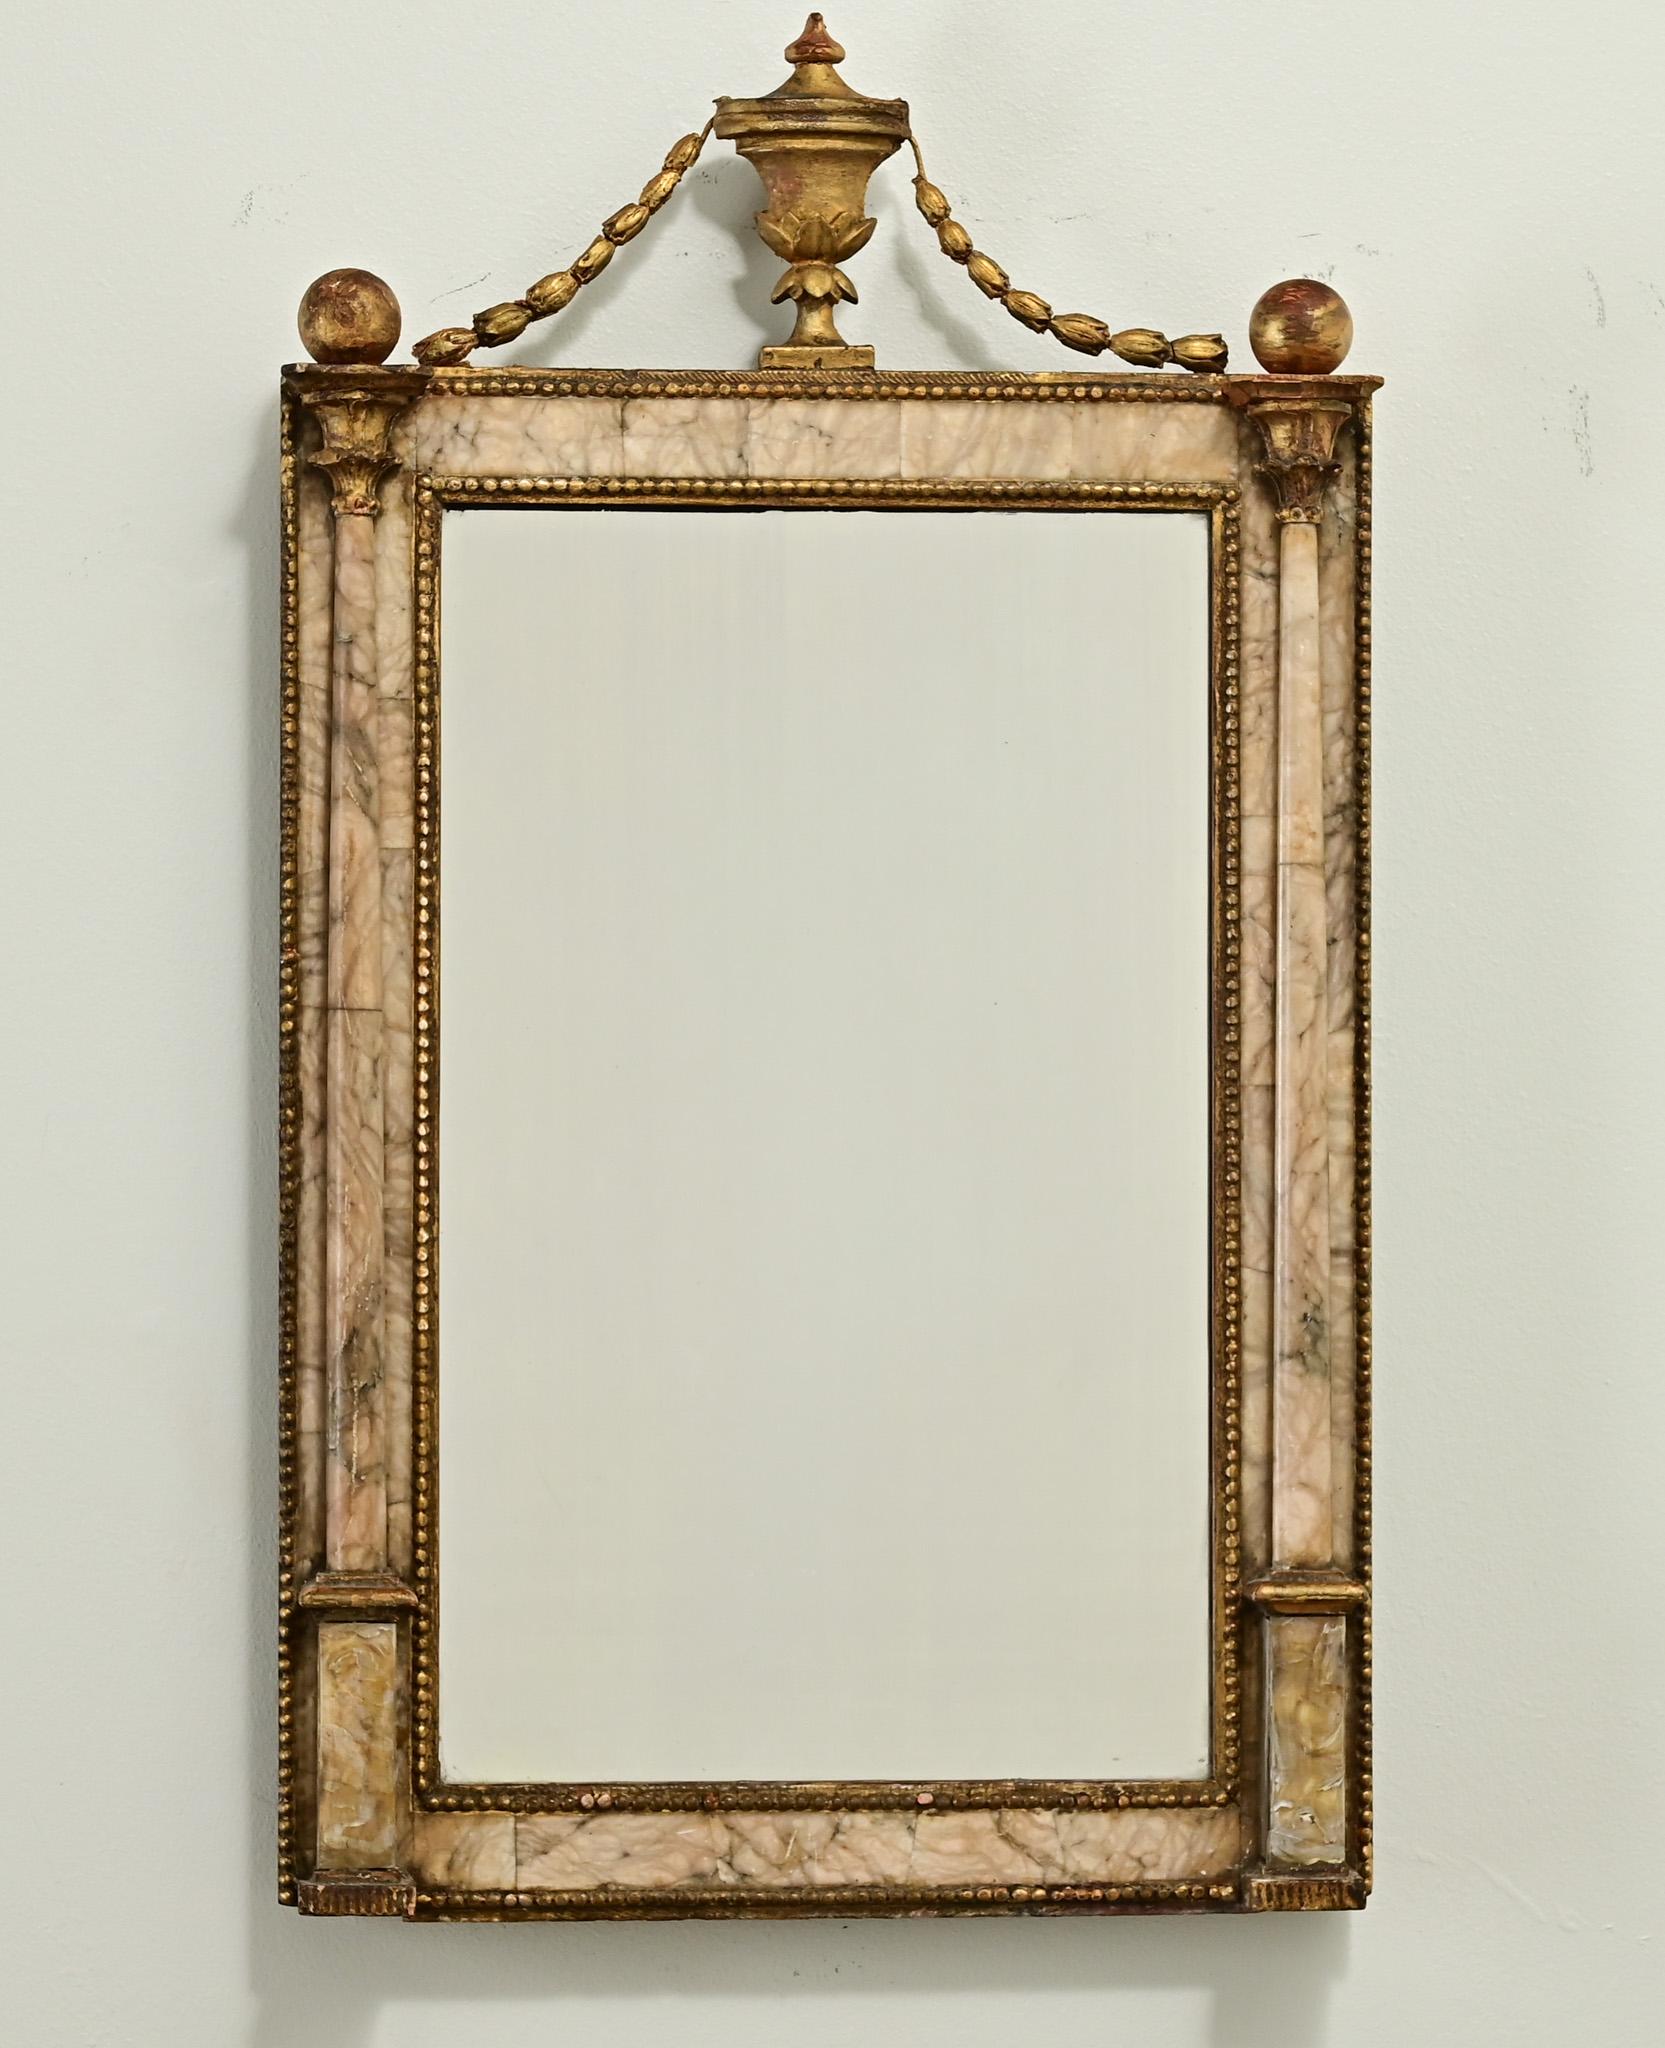 Ein zierlicher und einzigartiger Alabaster-Spiegel aus dem Frankreich des 19. Jahrhunderts. Auf der Oberseite befindet sich eine vergoldete Urne mit Girlande und Kugelaufsätzen. Der Spiegelrahmen aus geschnitztem und appliziertem Alabaster ist mit